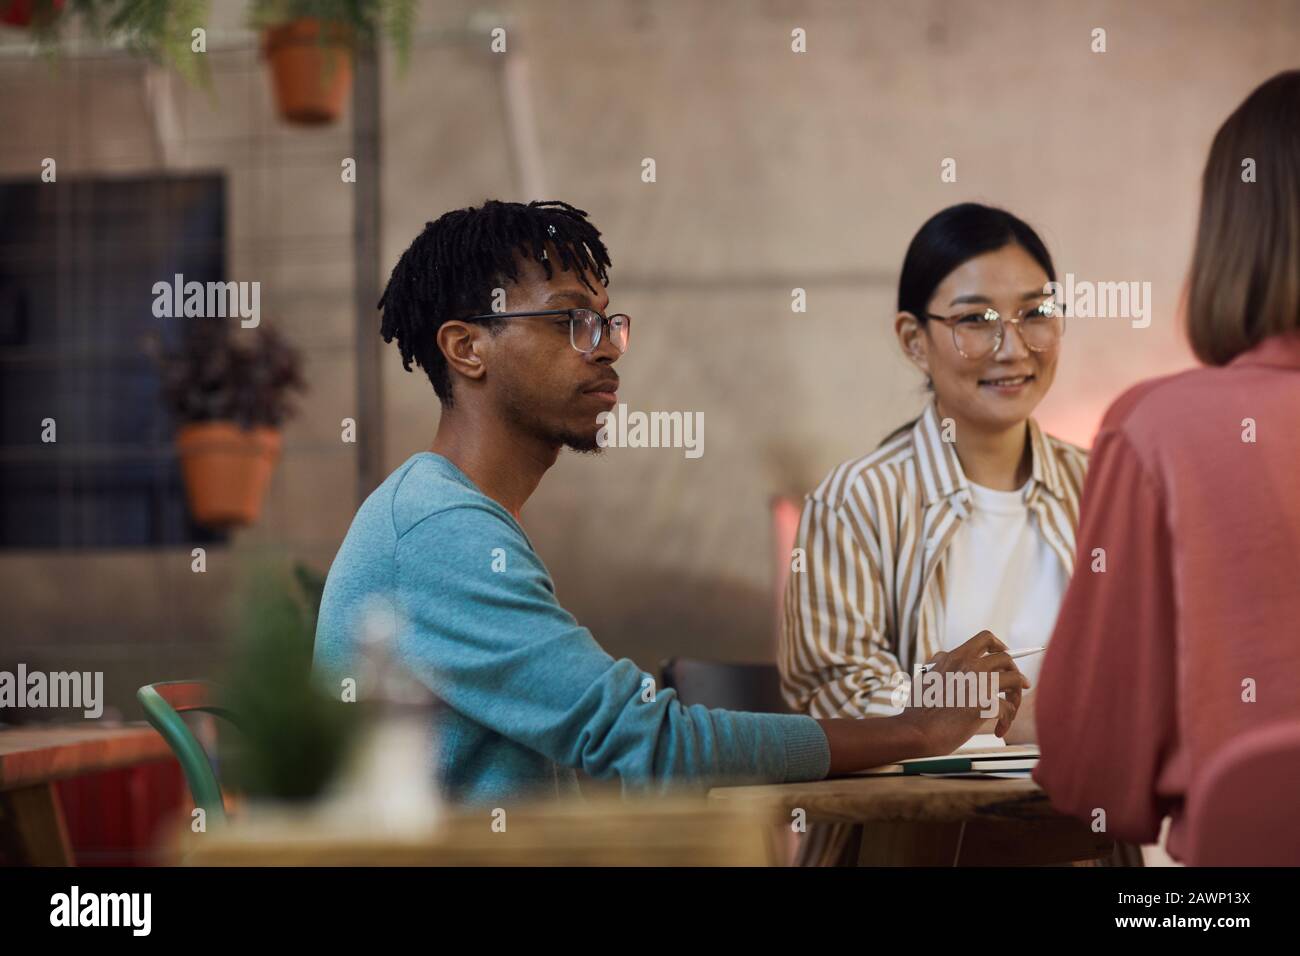 Gruppo multietnico di tre giovani che lavorano insieme al progetto mentre si siedono al tavolo in caffetteria, copia spazio Foto Stock